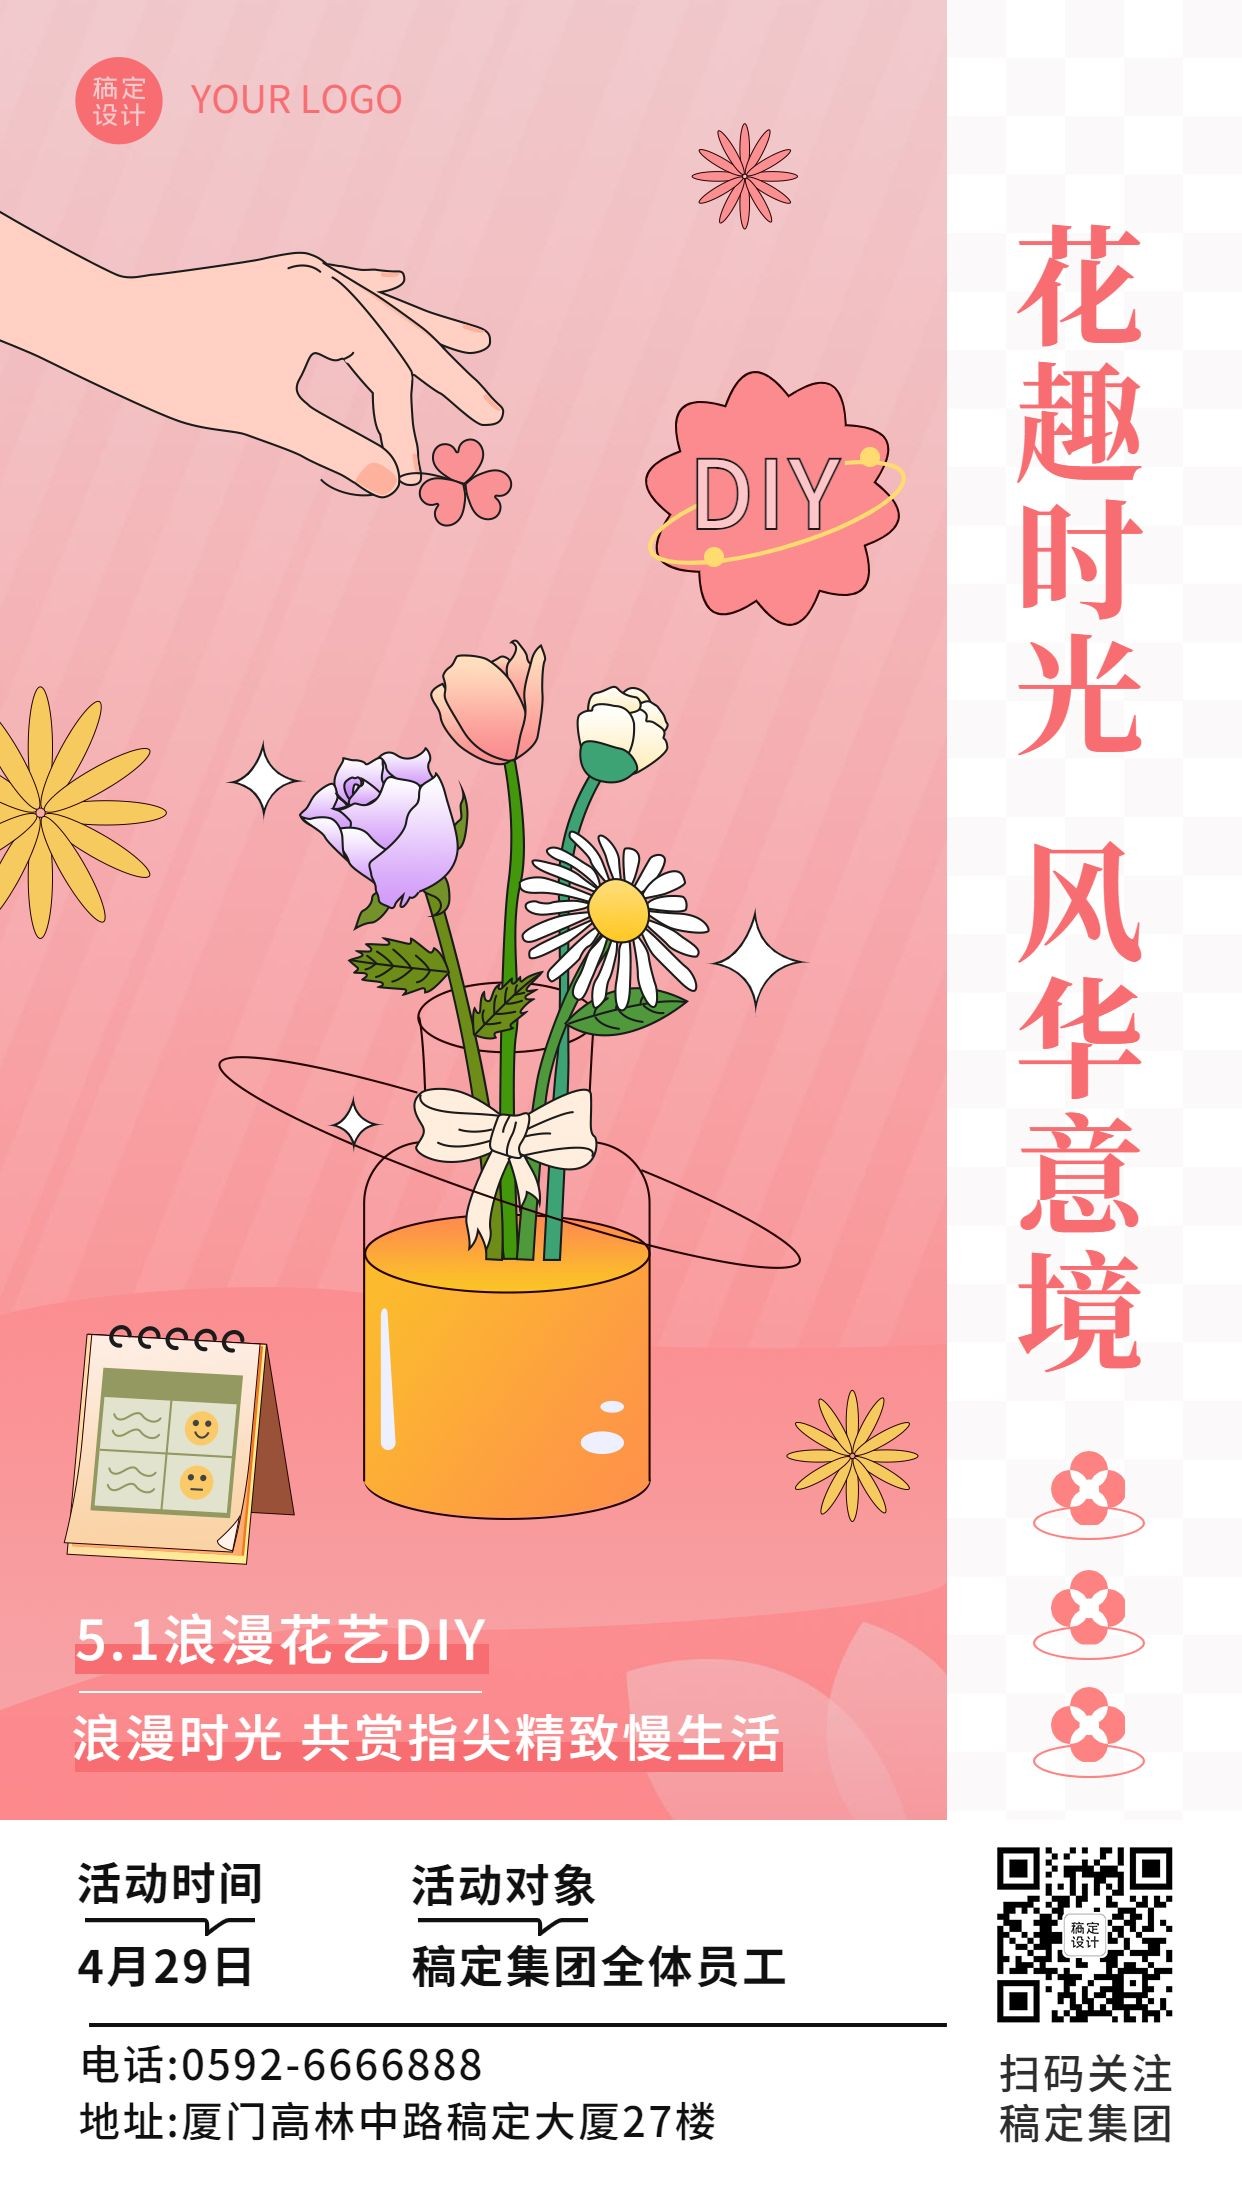 五一劳动节行政活动花艺DIY企业活动海报